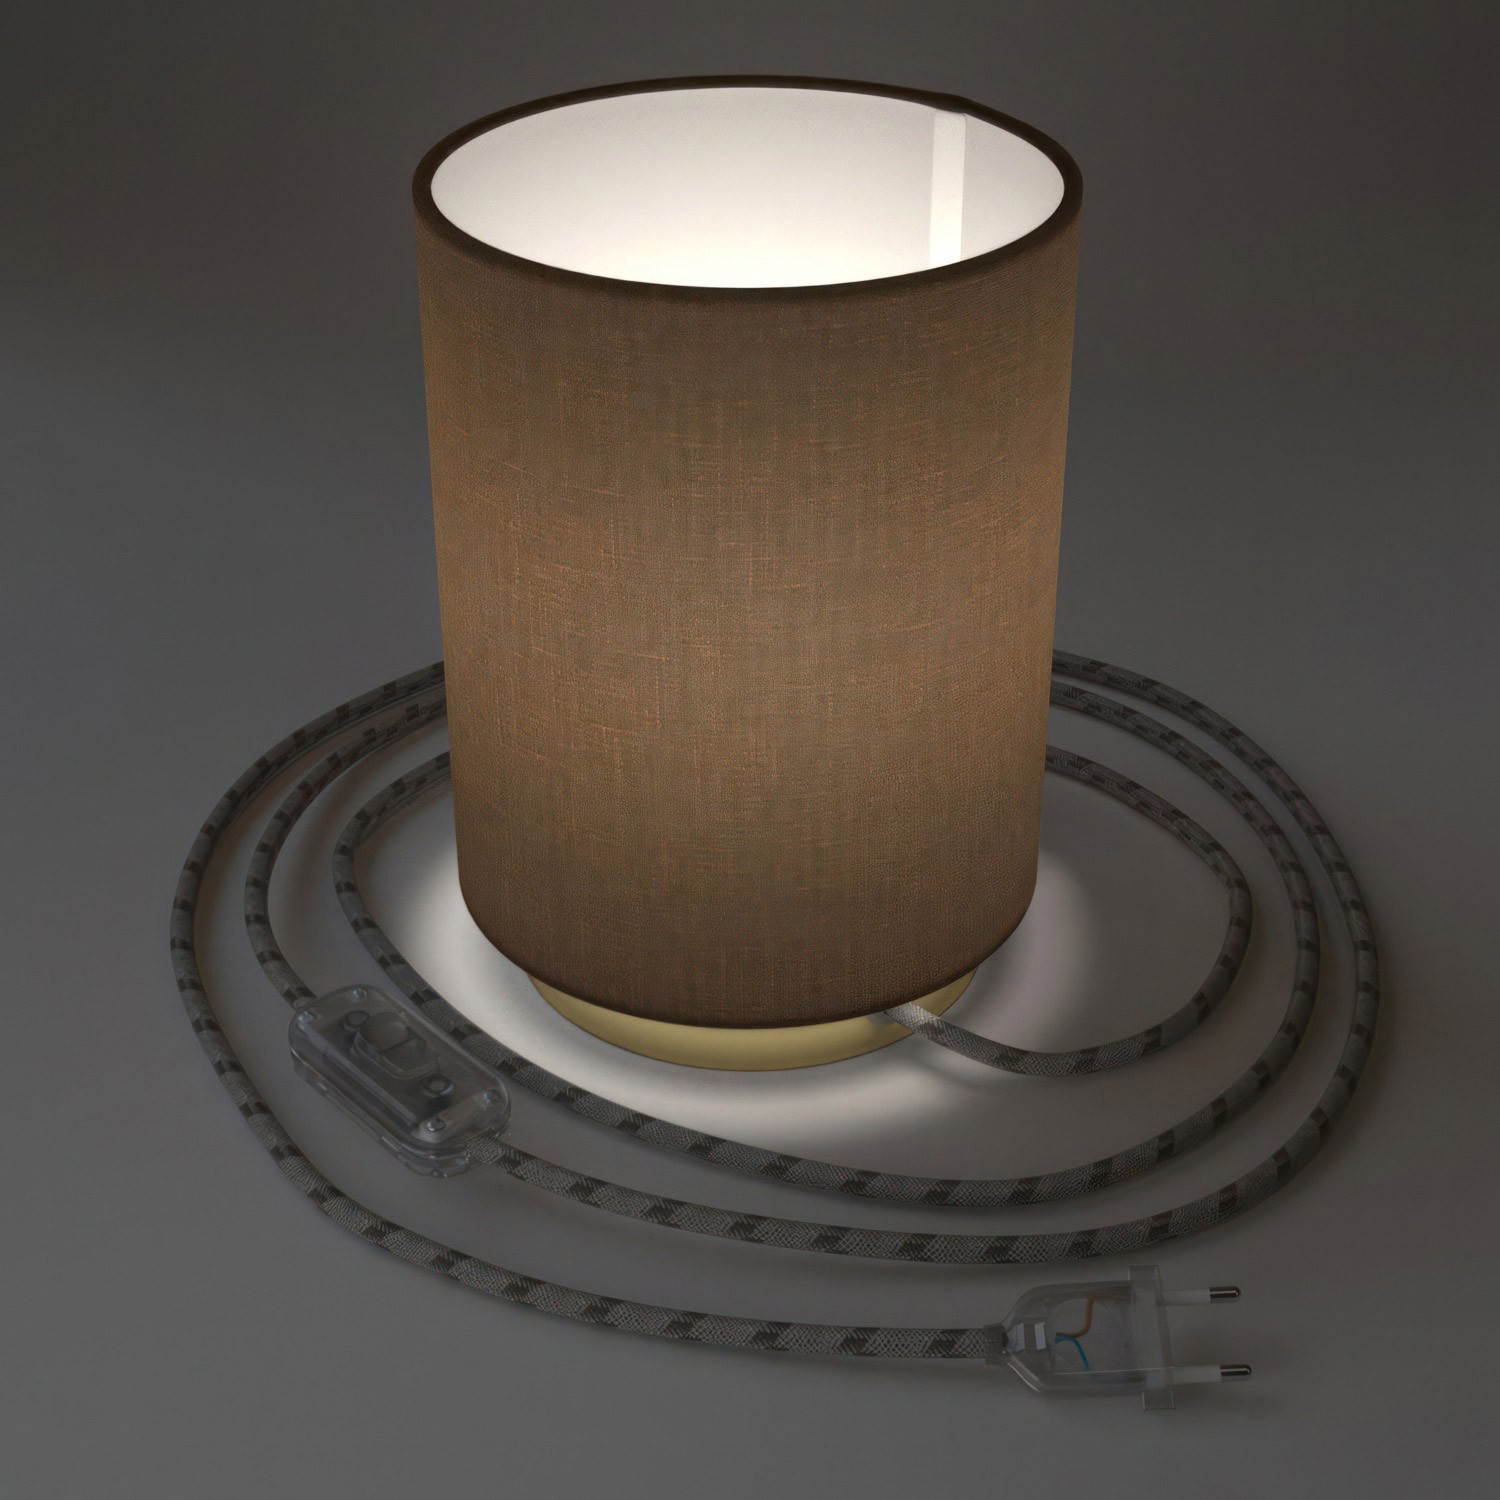 Posaluce i metal med Brown Camelot Cilindro lampeskærm, komplet med stofkabel, afbryder og 2-polet stik